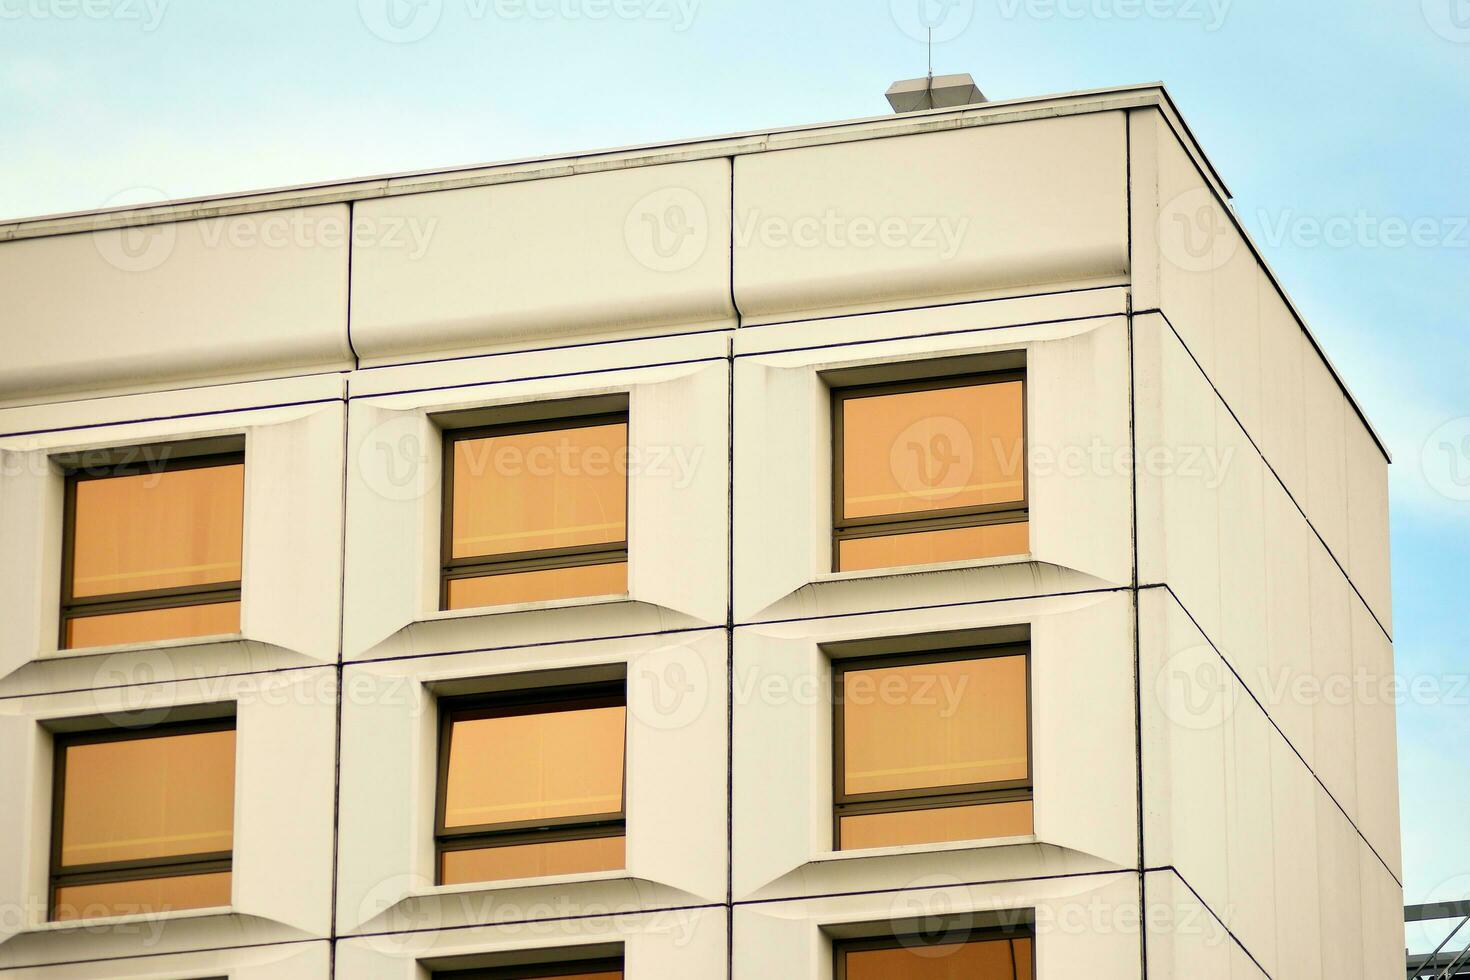 moderne Bureau bâtiment dans le ville avec les fenêtres et acier et aluminium panneaux mur. contemporain commercial architecture, verticale convergent géométrique lignes. photo